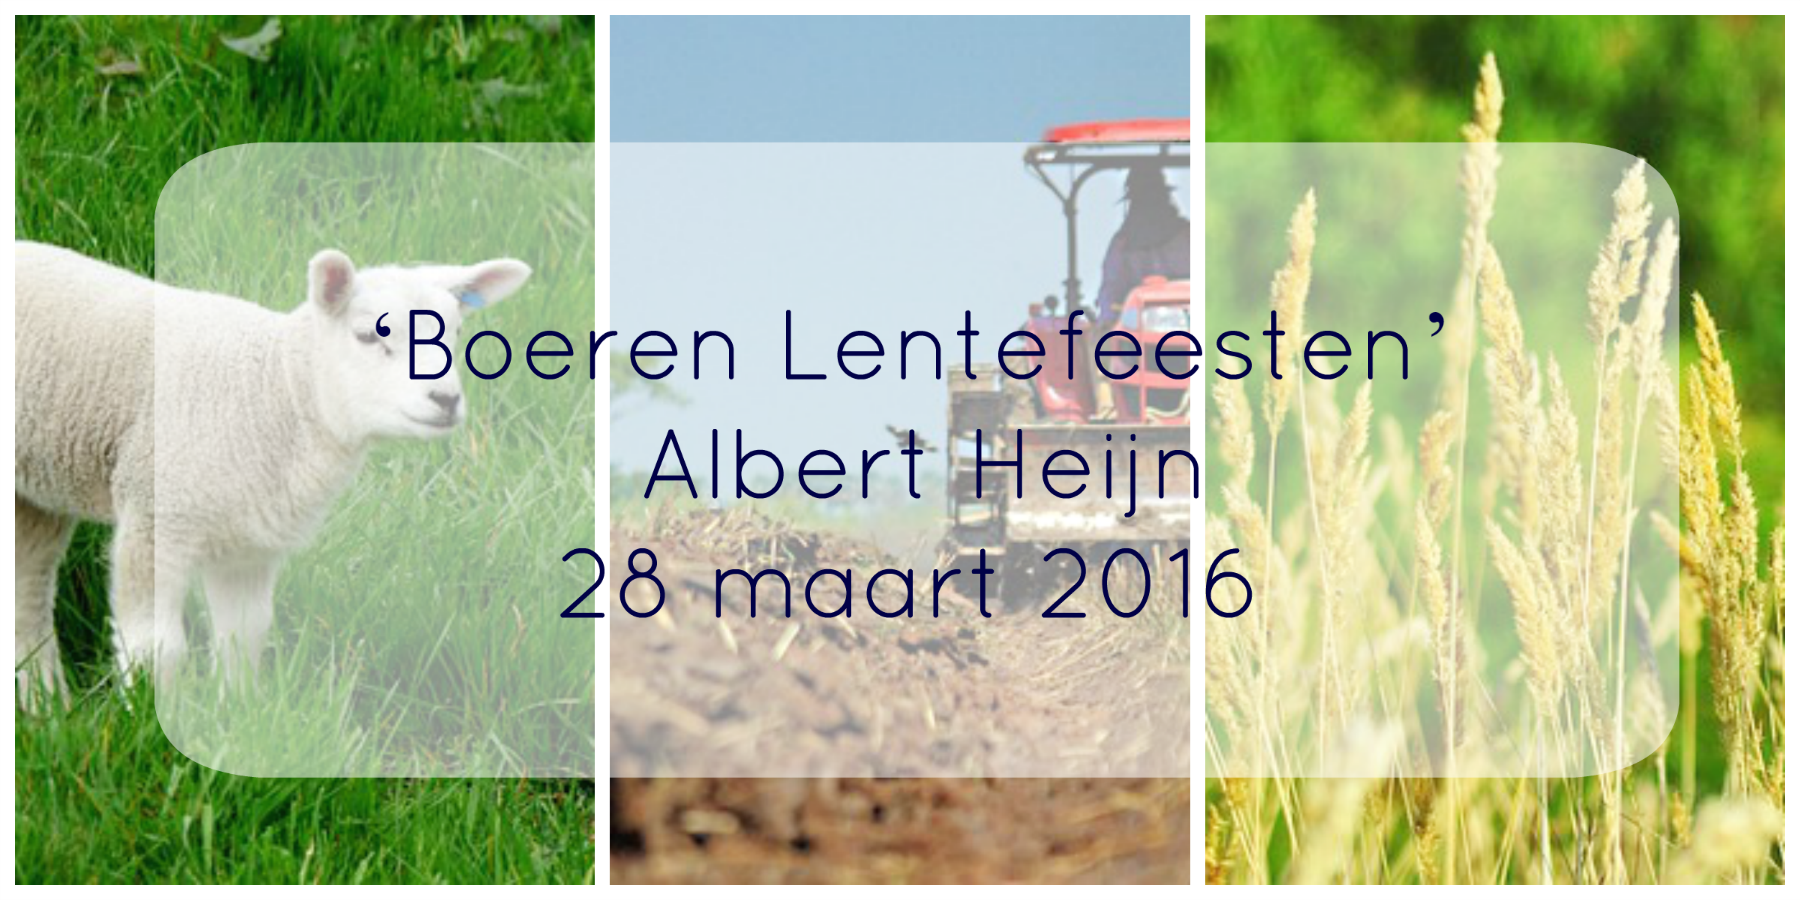 ‘Boeren Lentefeesten’ van Albert Heijn